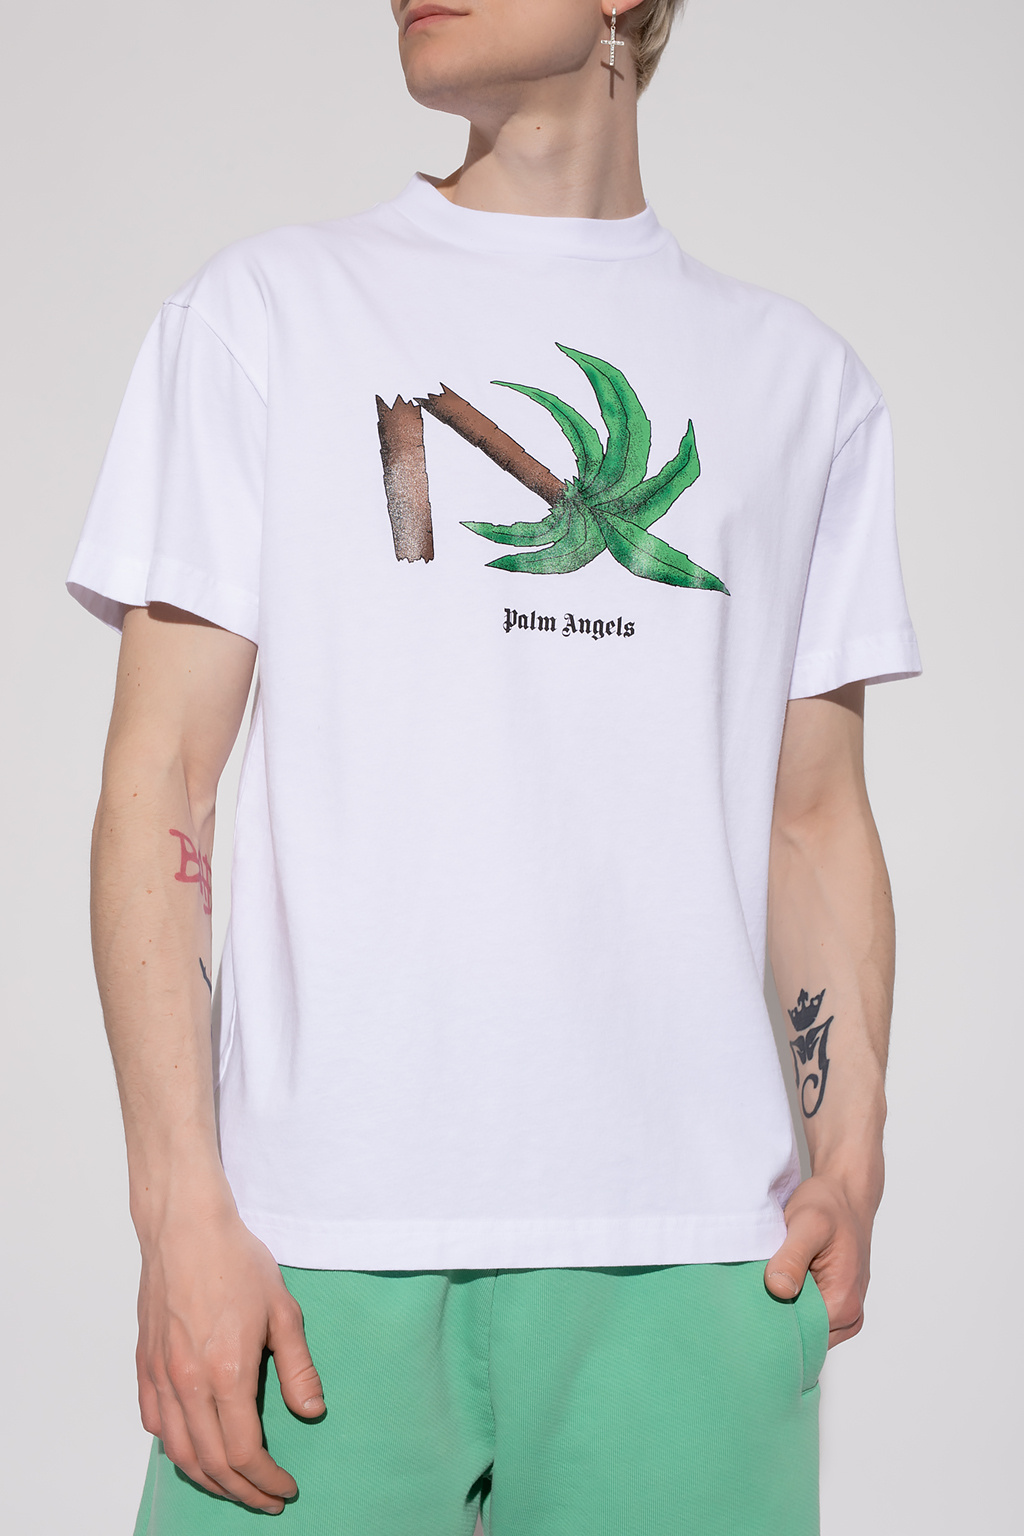 shirt Palm Angels - White Logo T - raf simons x fred perry logo long sleeve  sweatshirt item - IetpShops HK